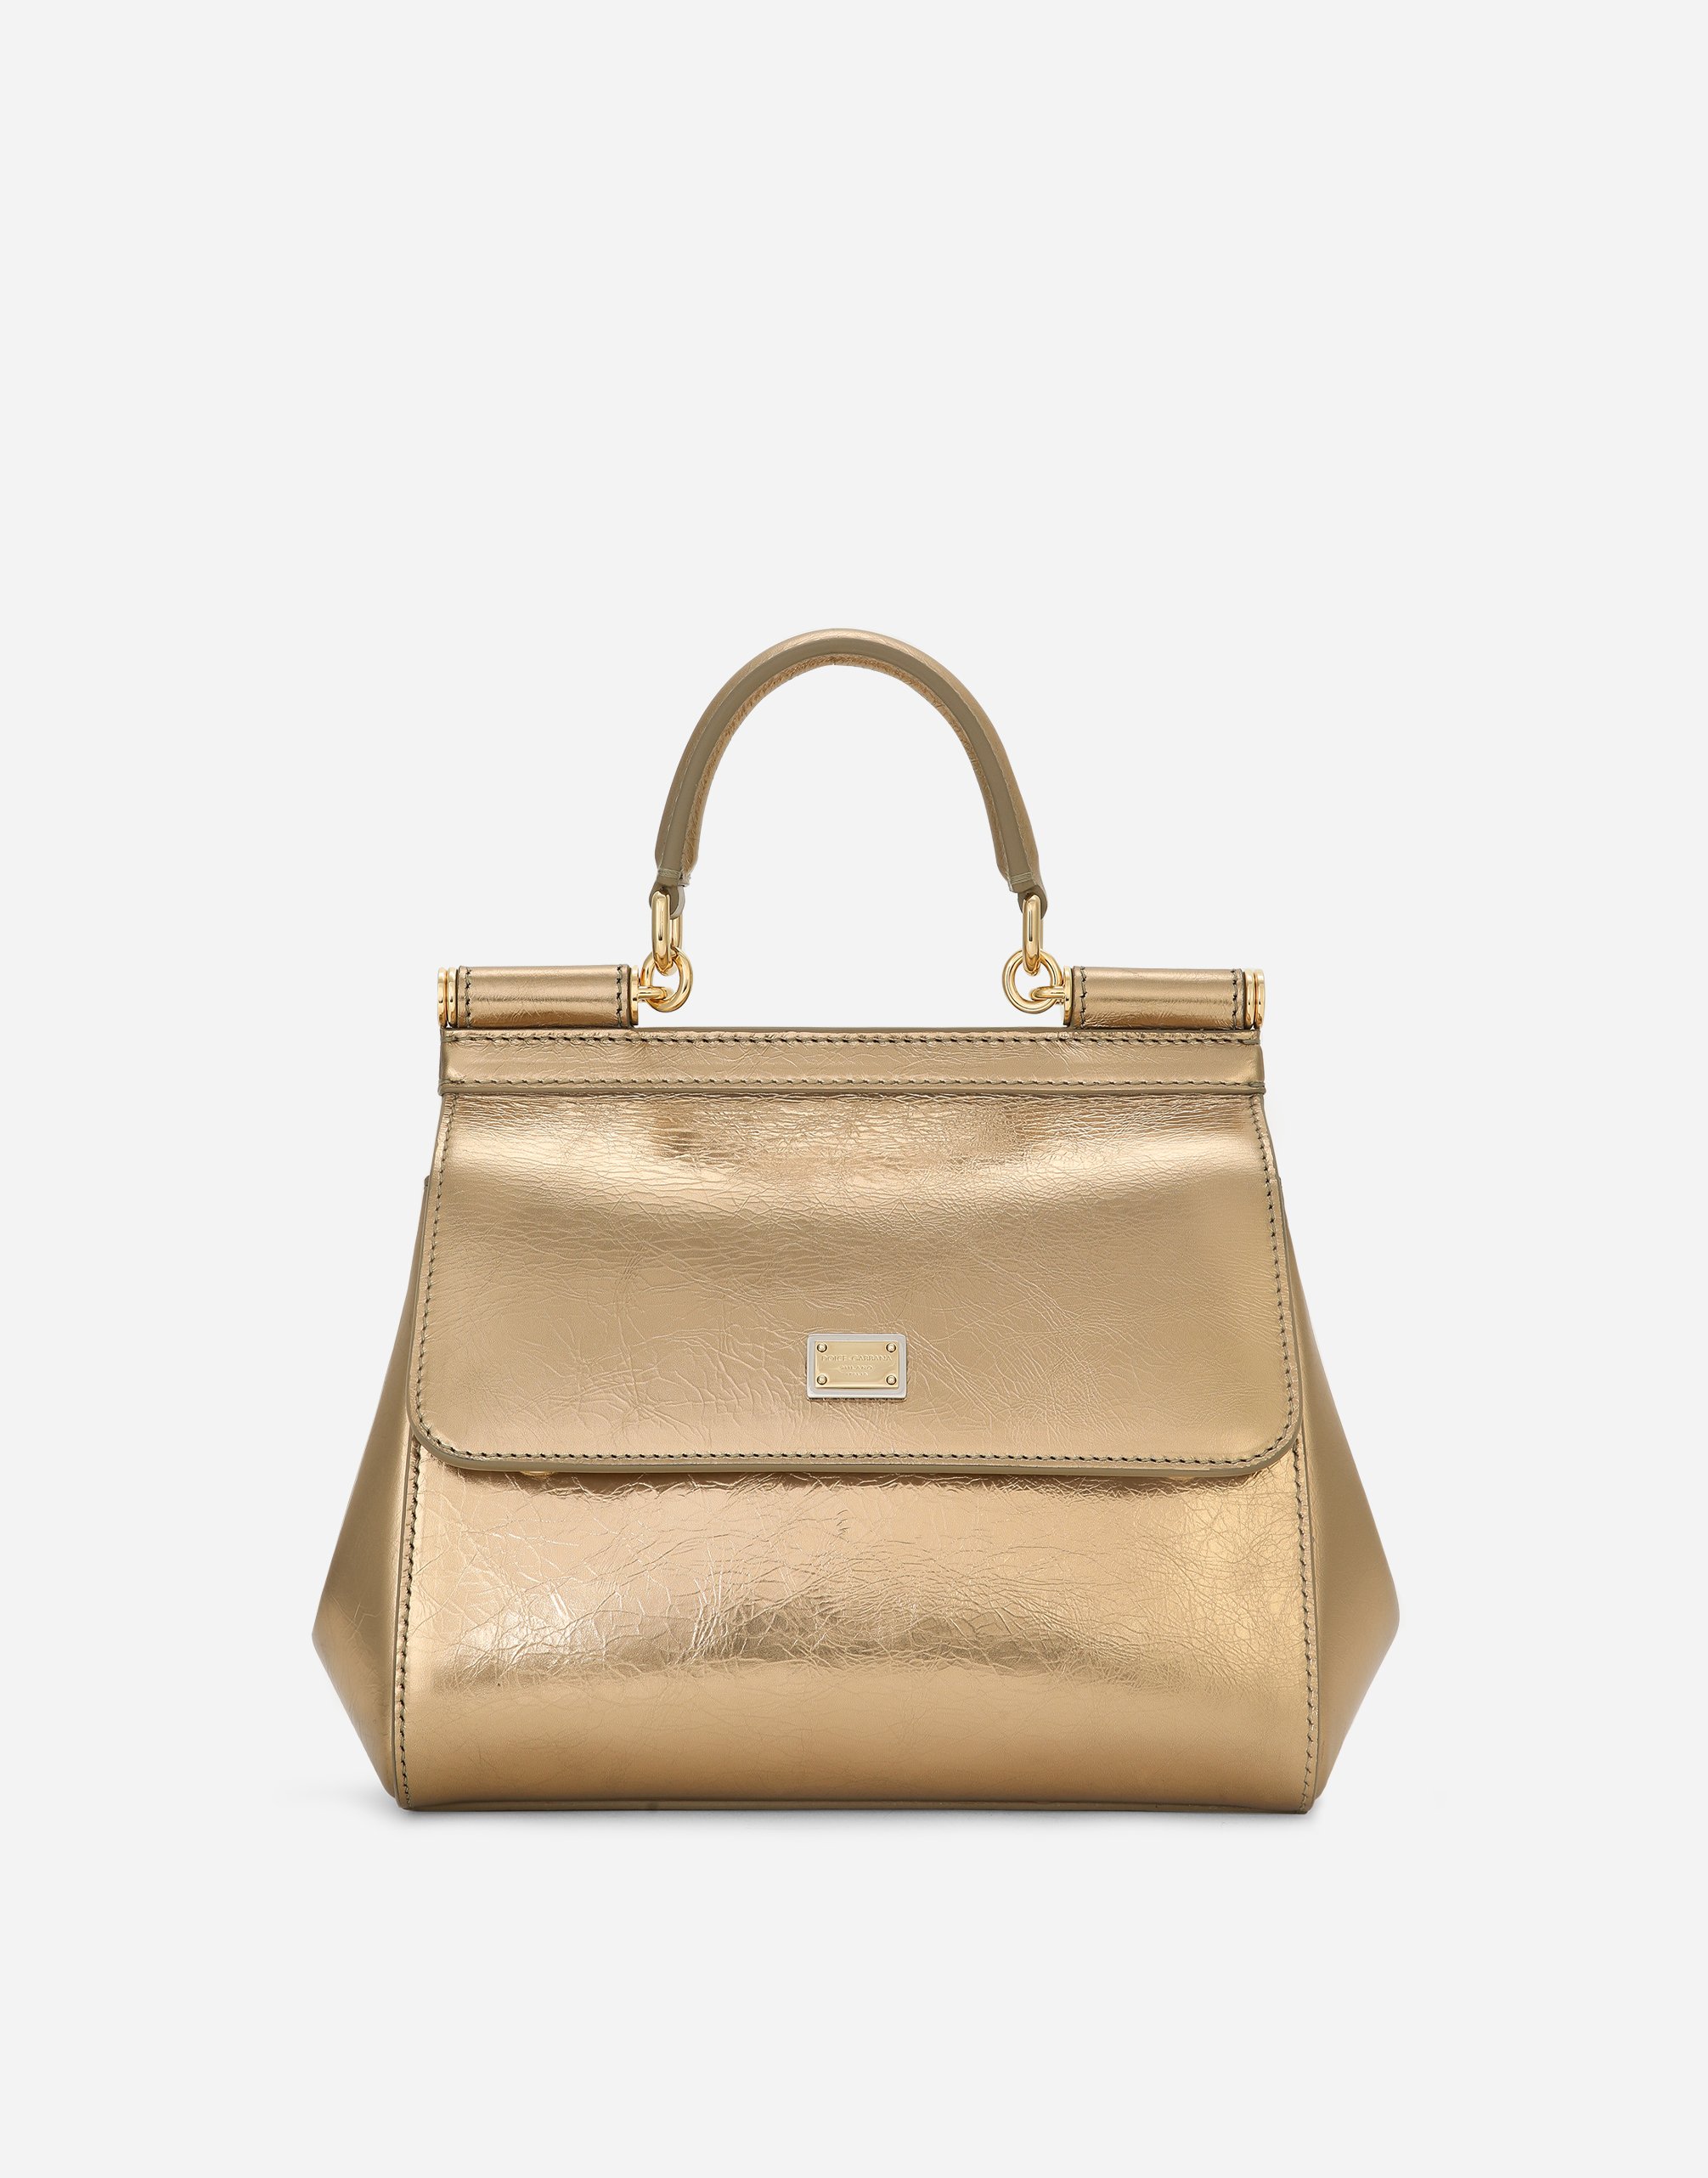 Dolce & Gabbana Medium Sicily Handbag In Gold